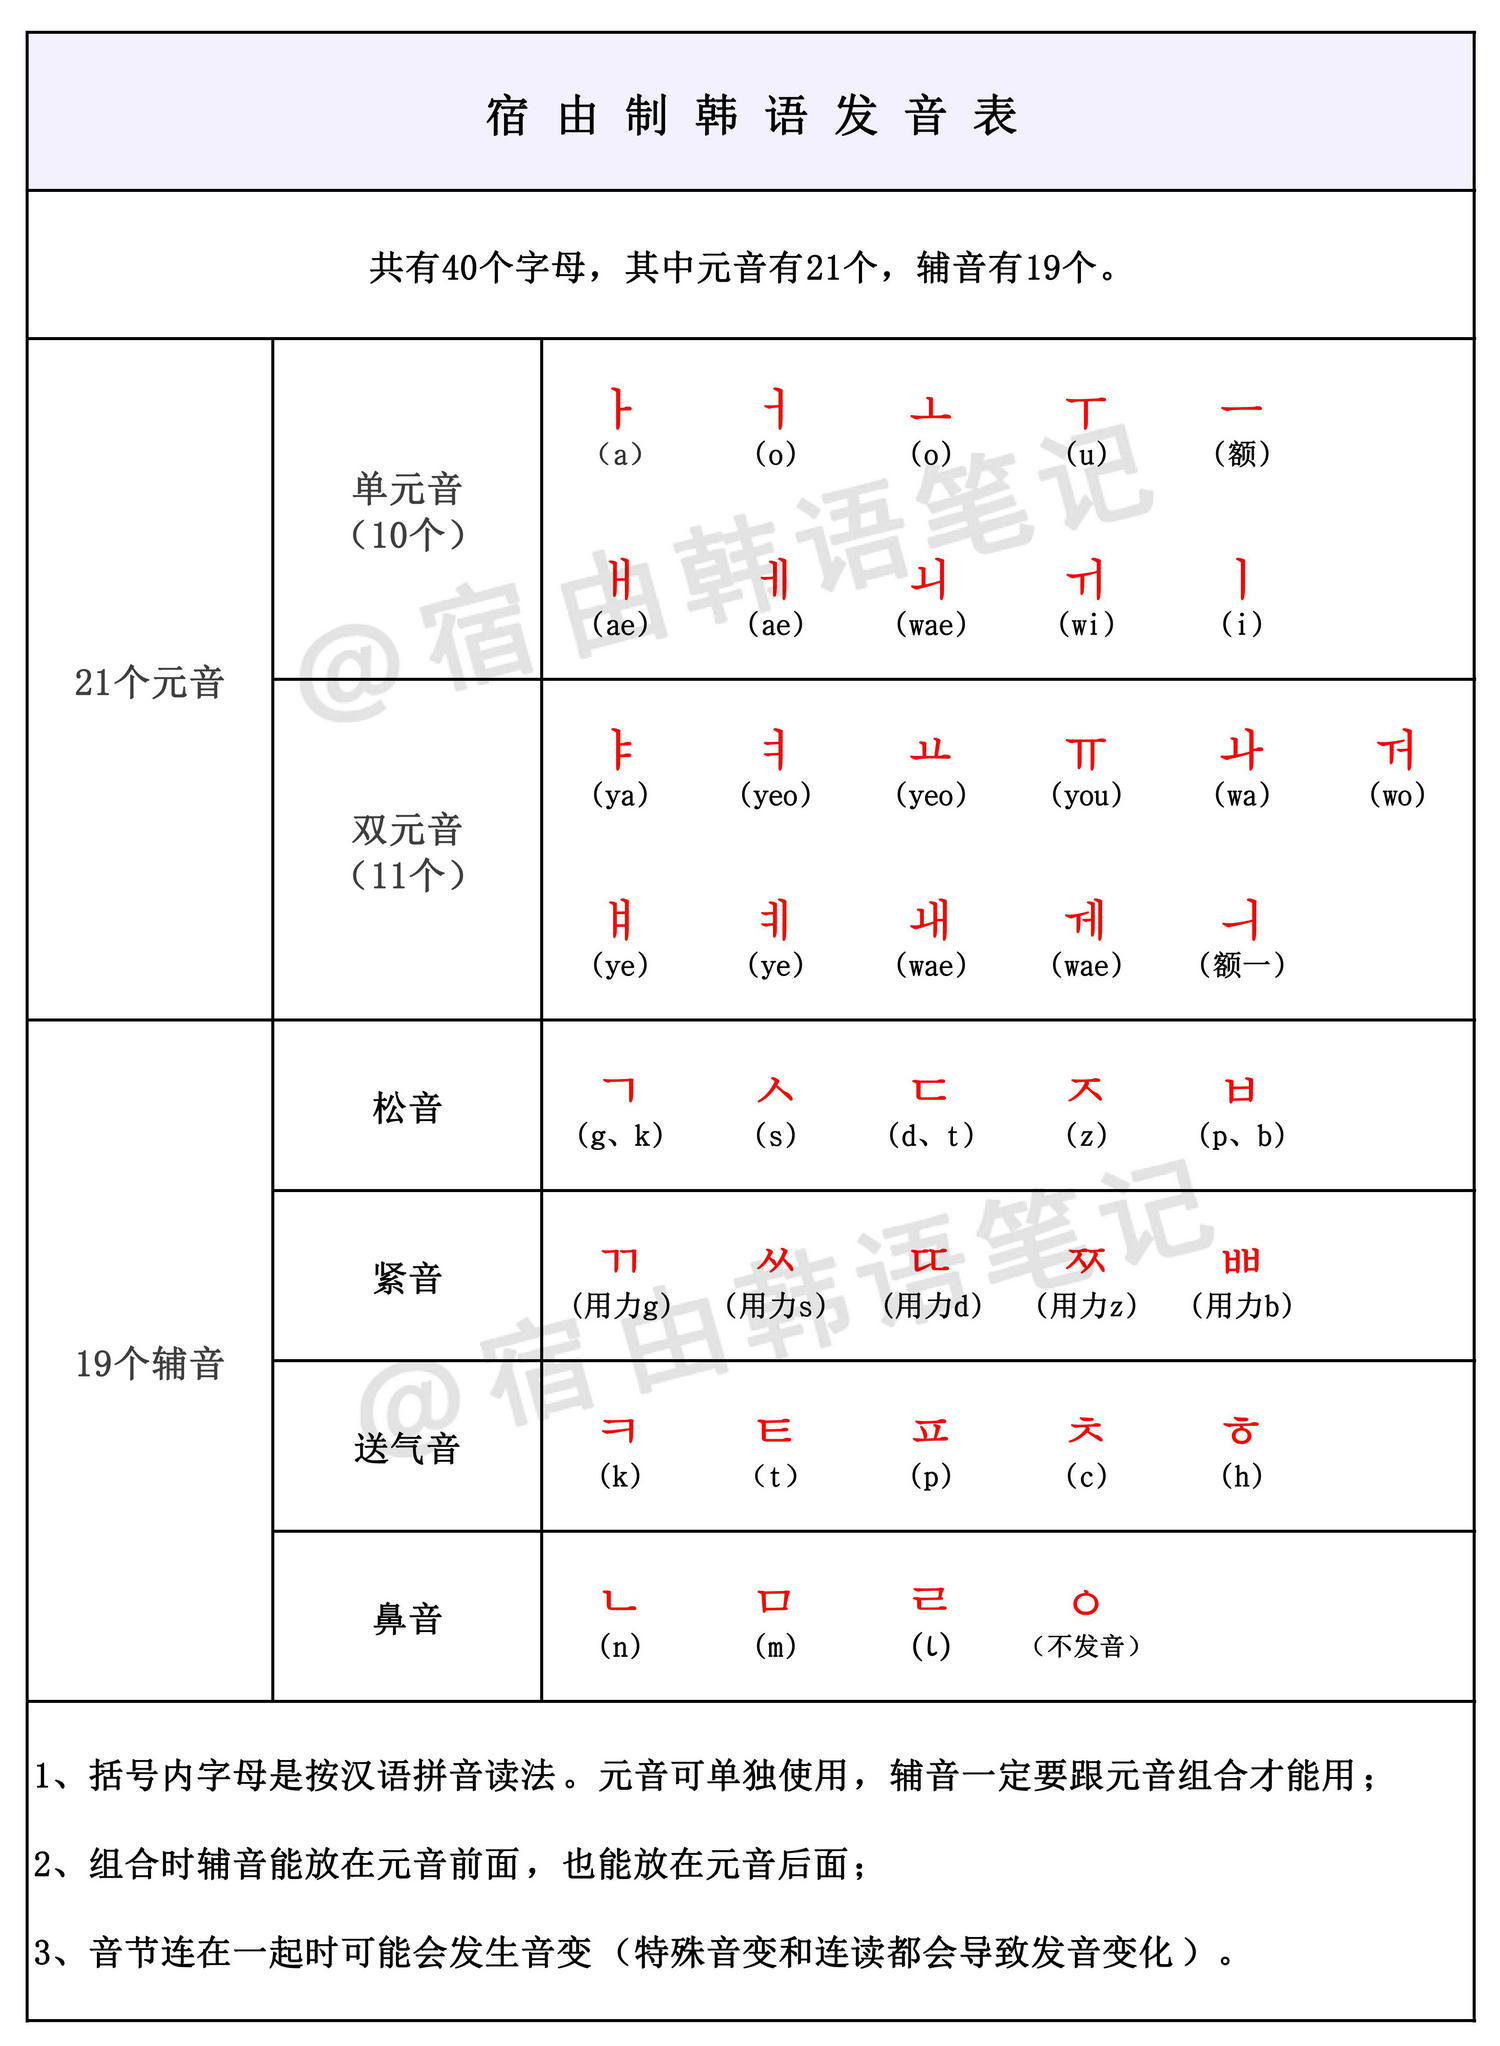 02 三个阶段之:发音阶段 韩语一共有40个发音元素,分元音和辅音,靡换